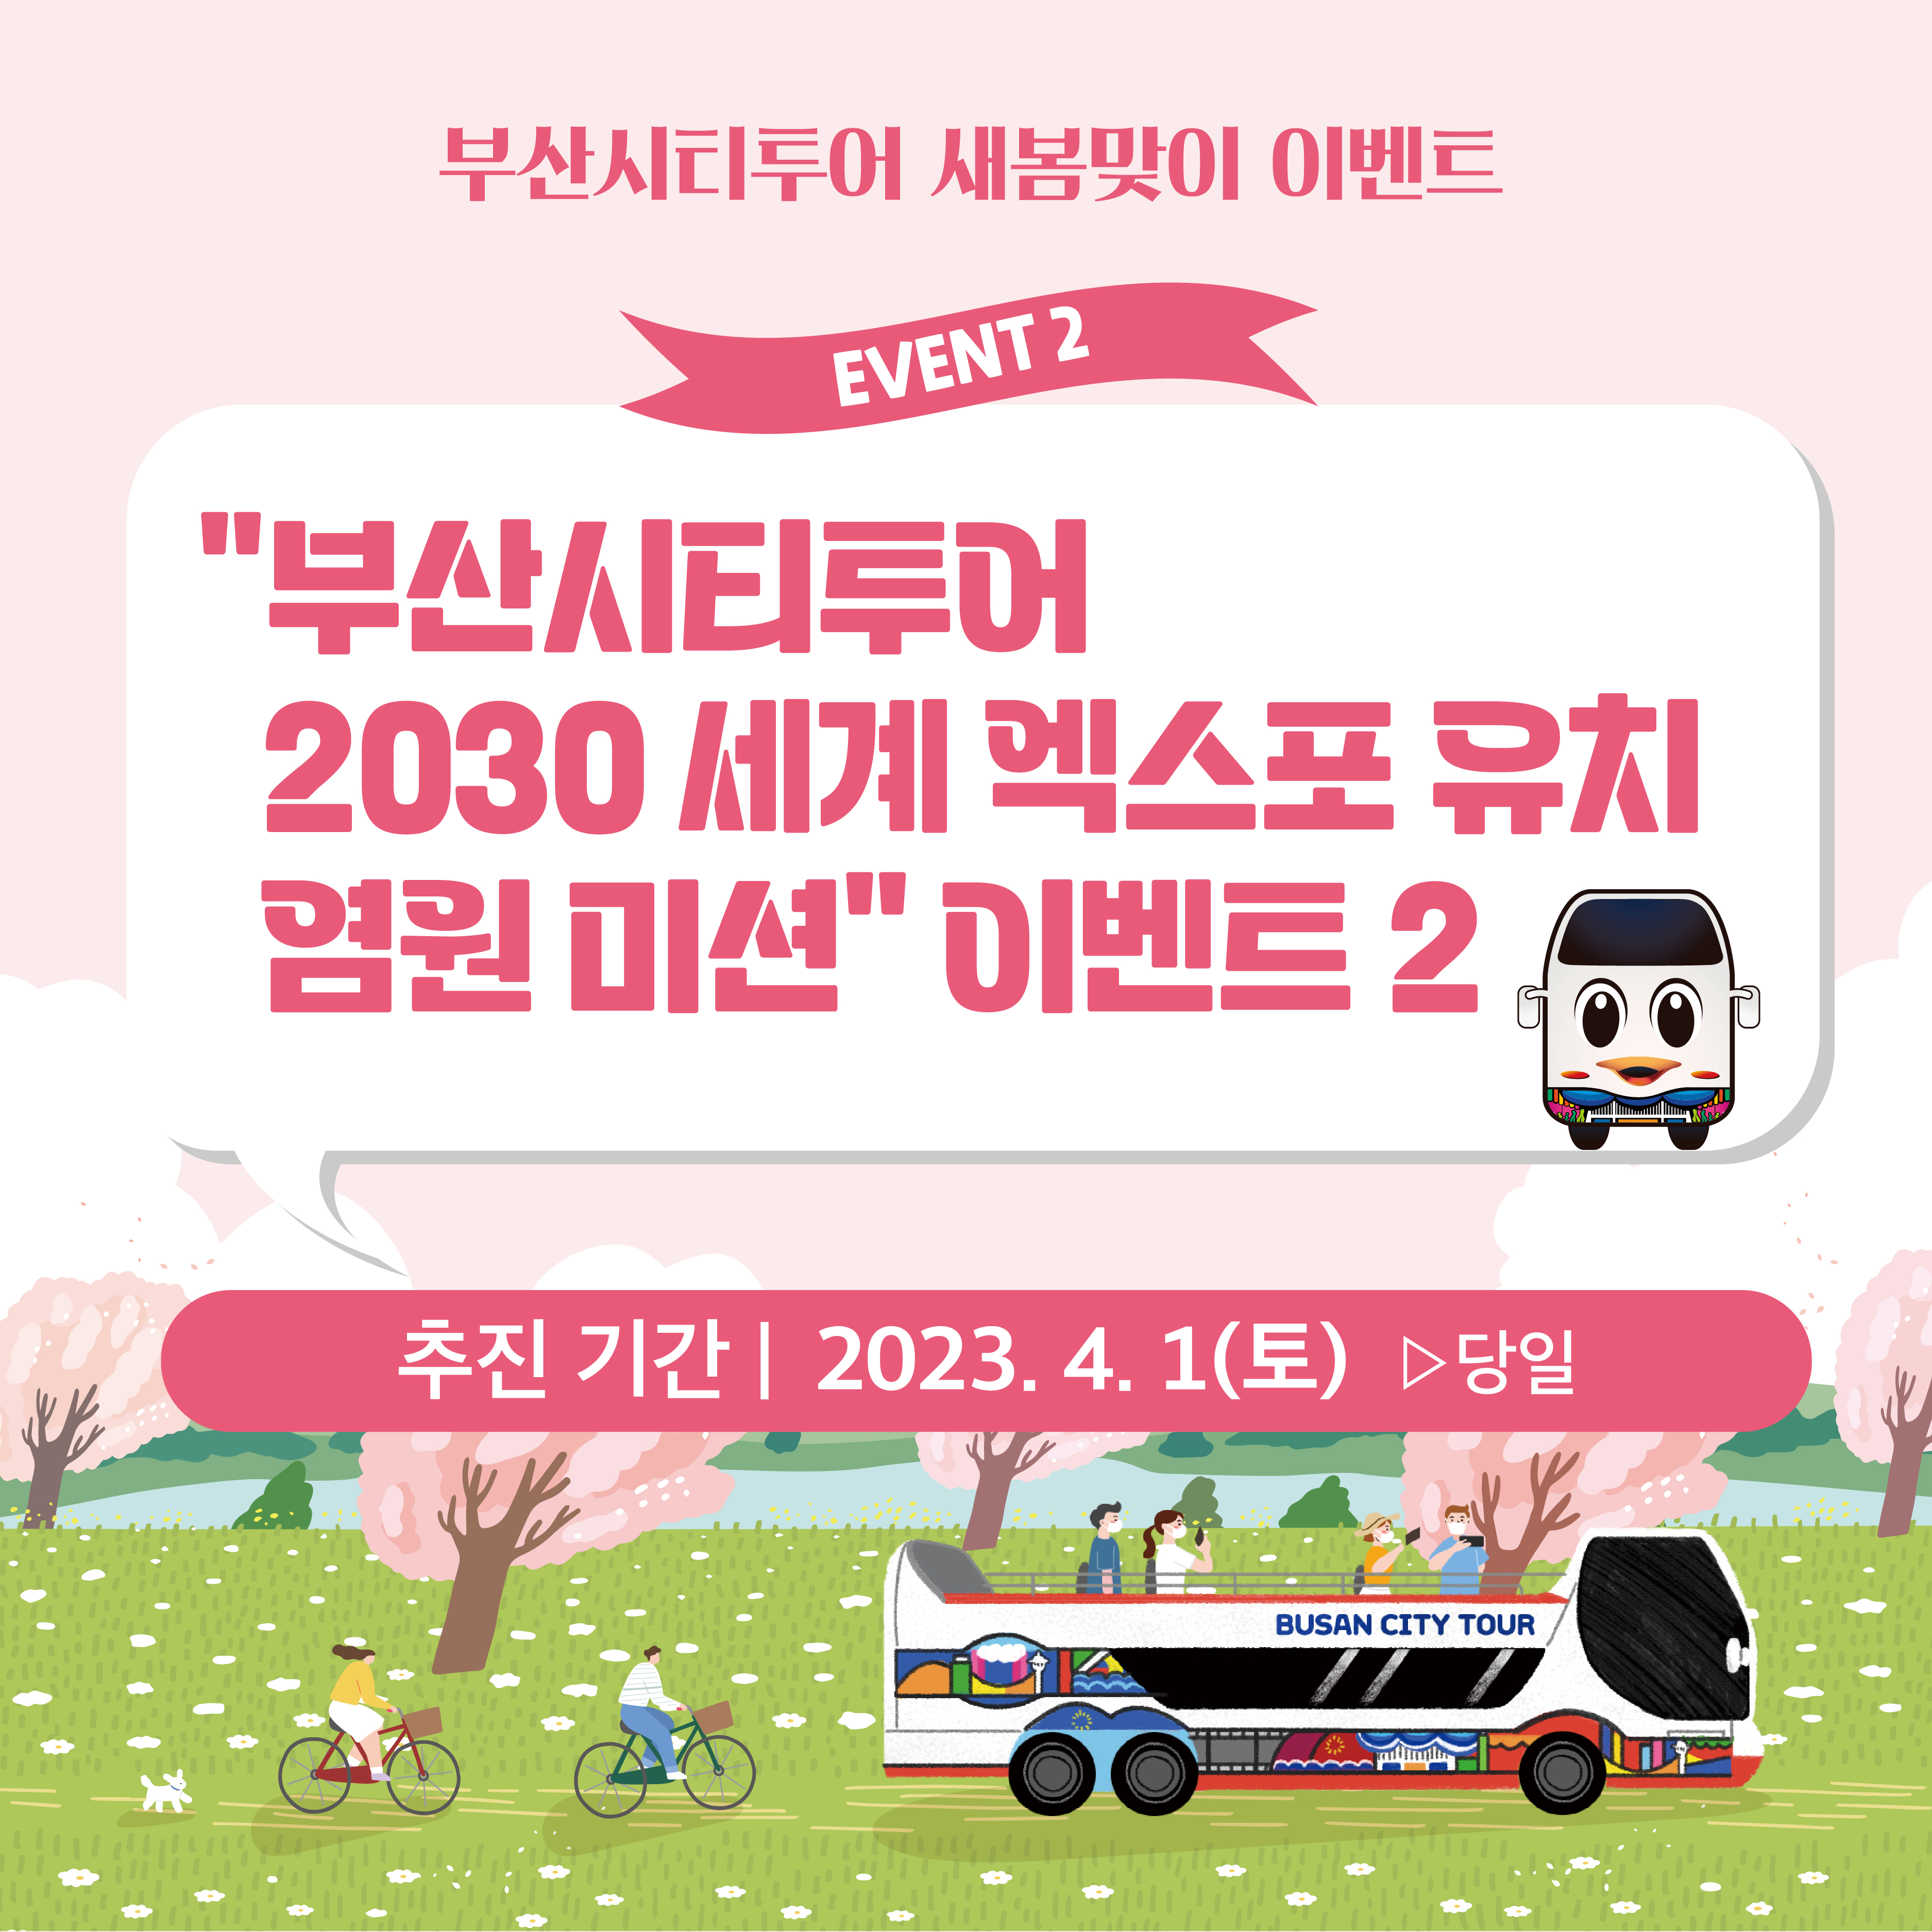 부산시티투어버스 2030 세계 엑스포 유치 염원 미션 이벤트